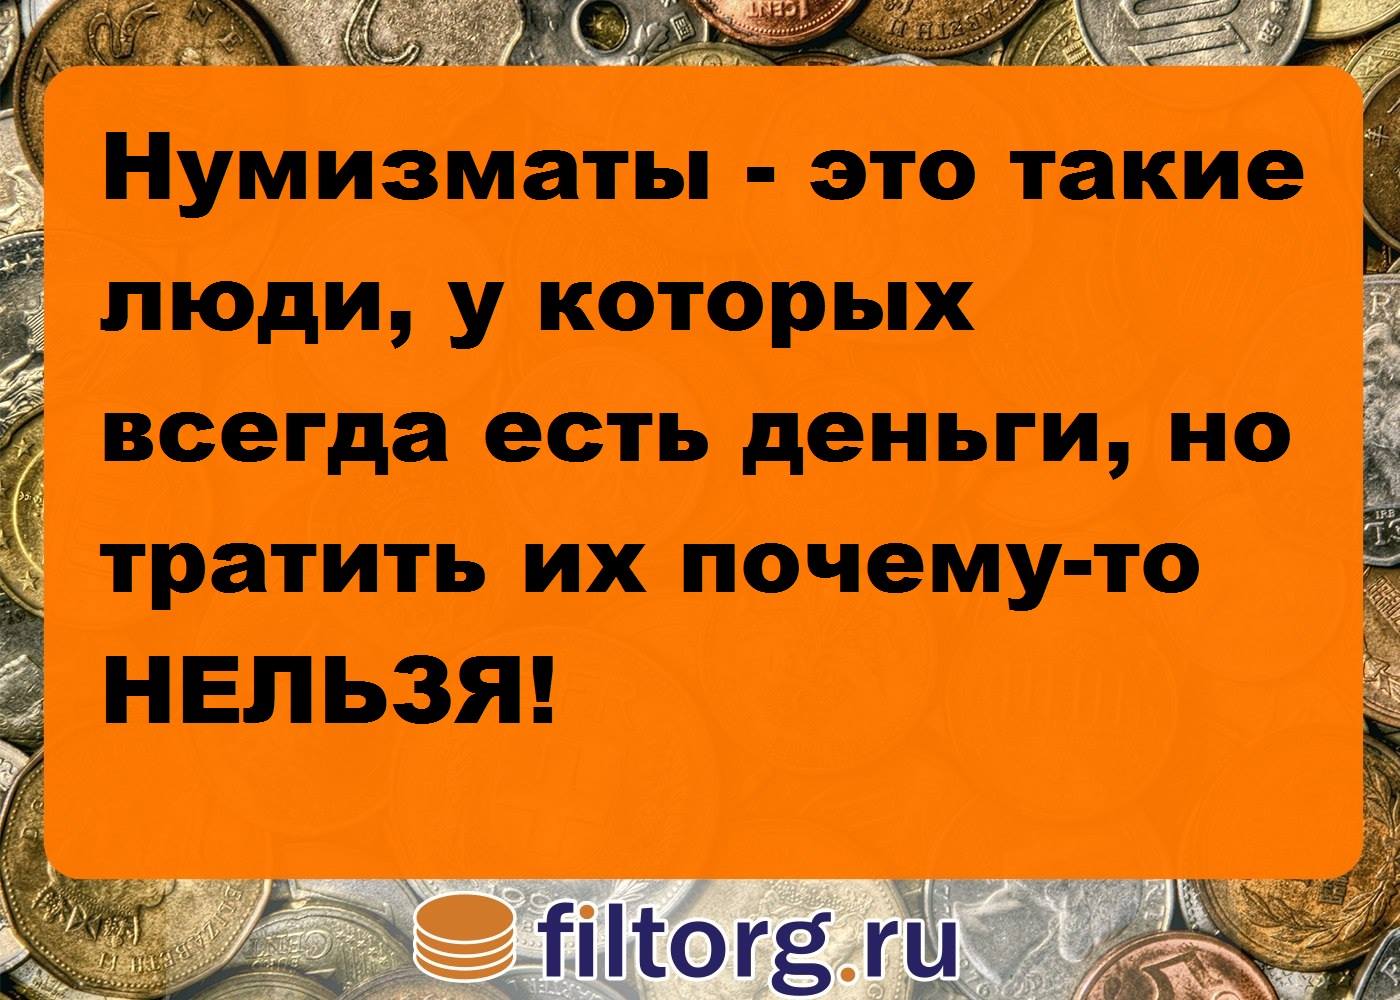 http://i69.fastpic.ru/big/2015/0722/f9/2b12e80544f7a38522561af963bc4cf9.jpg